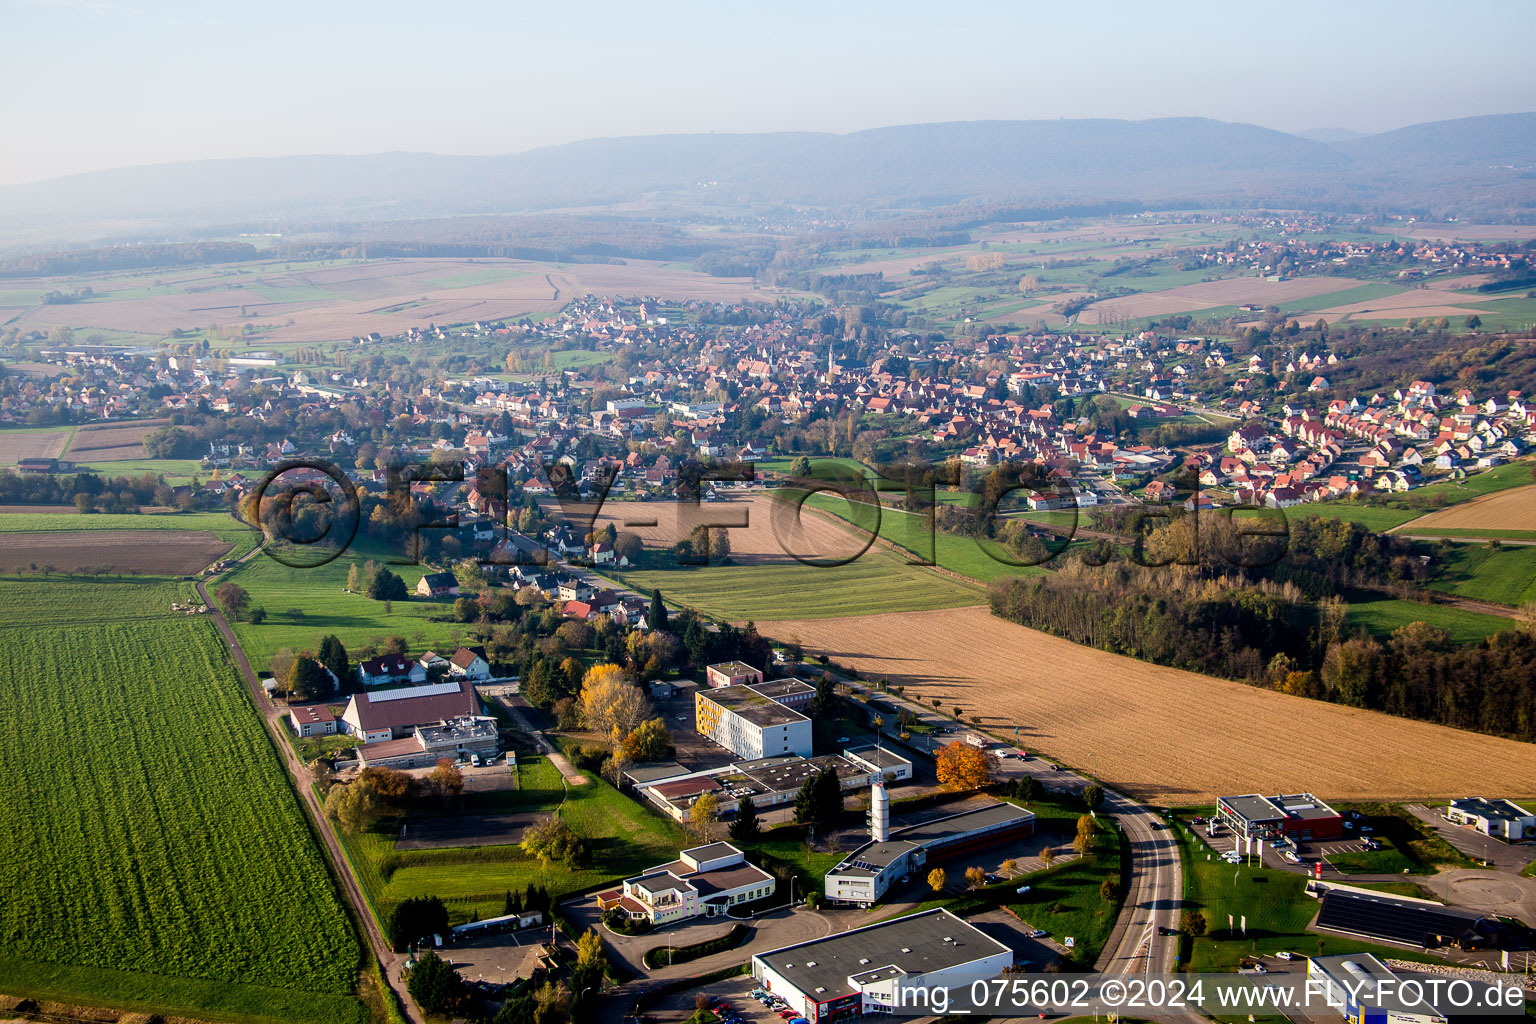 Luftbild von Dorf - Ansicht am Rande von landwirtschaftlichen Feldern und Nutzflächen in Soultz-sous-Forêts in Grand Est im Bundesland Bas-Rhin, Frankreich